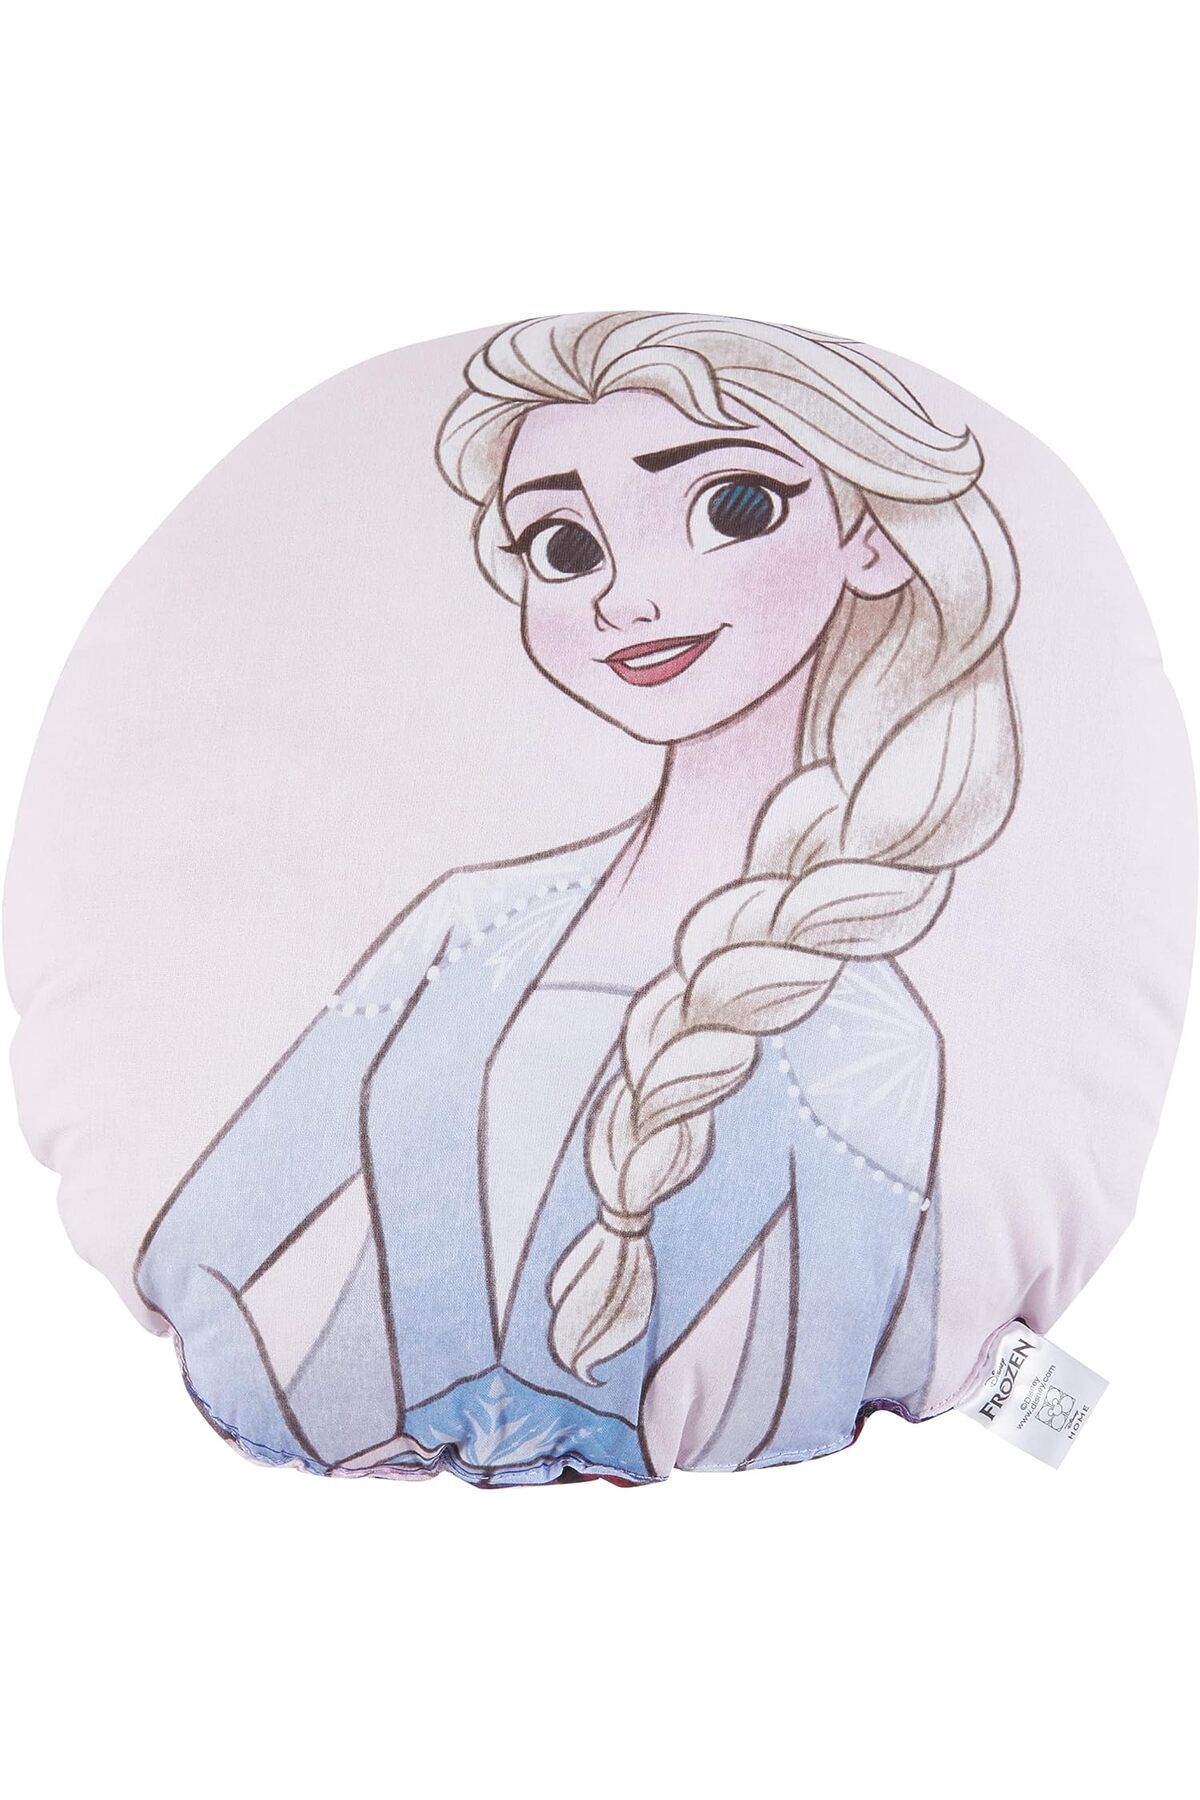 NcK Lisanslı Disney Frozen 2 Elsa&Anna 40x40 Kırlent Renkli/Baskılı